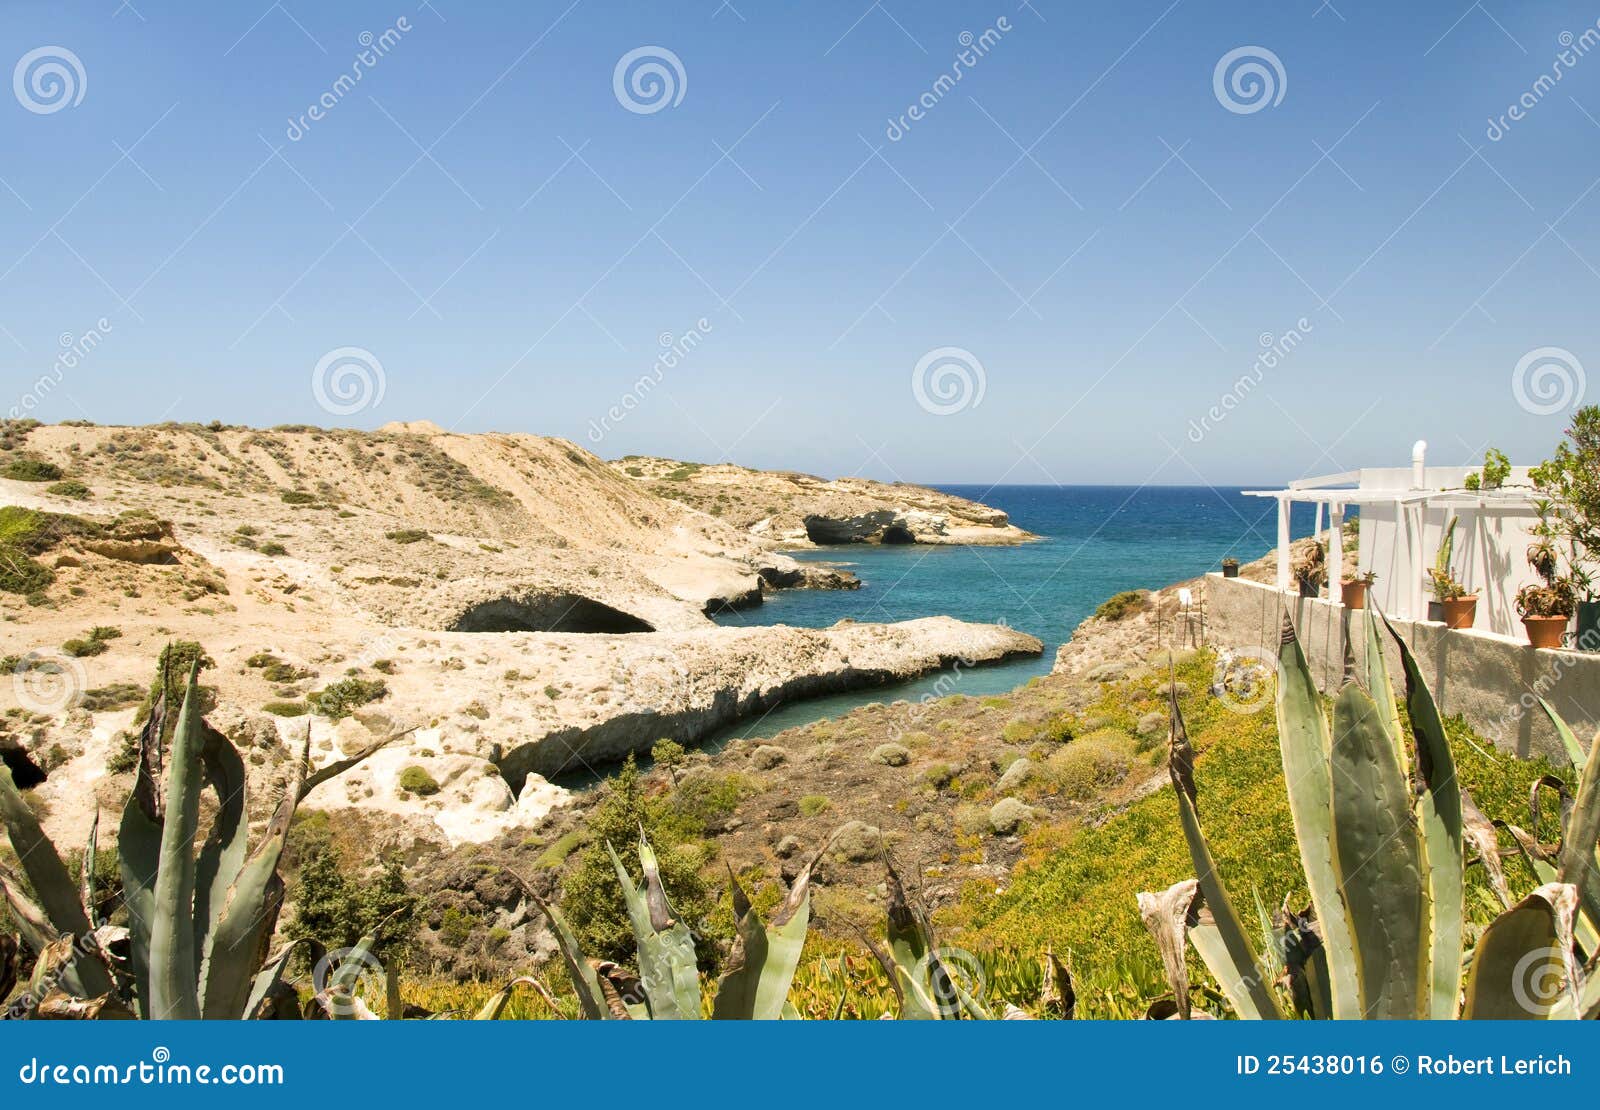 LimestonestrandMilos Cyclades Grekland. Limestonestrand med den grekiska ön Cyclades Grekland för typiska vita för husarkitektur medelhavs- Milos för hav